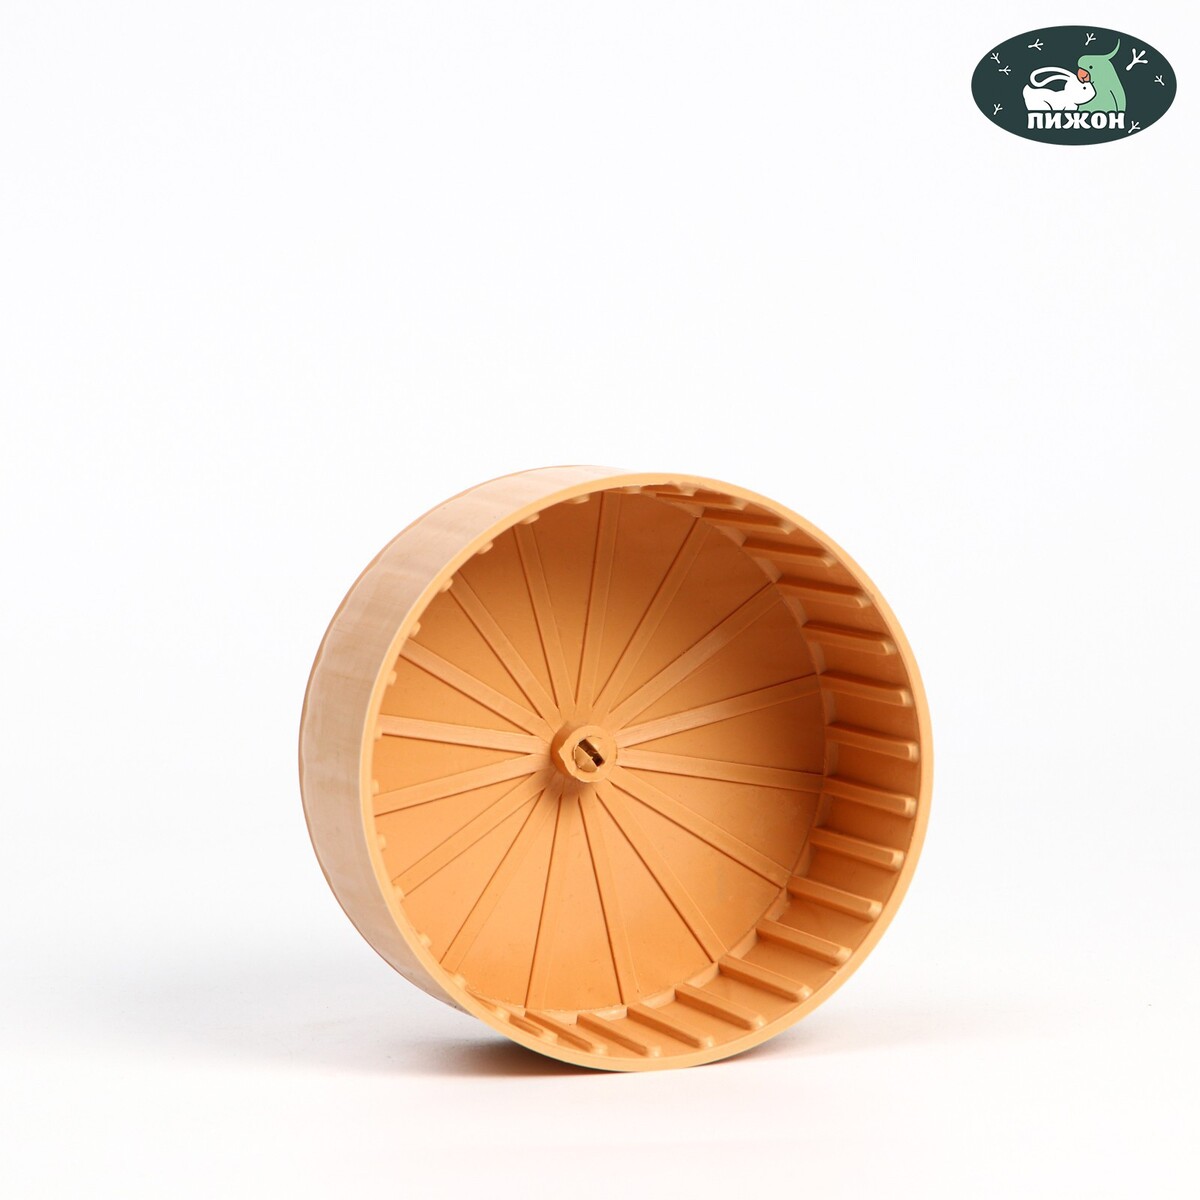 Колесо для грызунов полузакрытое пластиковое, без подставки, 14 см, бежевое колесо для грызунов металлическое сетчатое 14 см хром